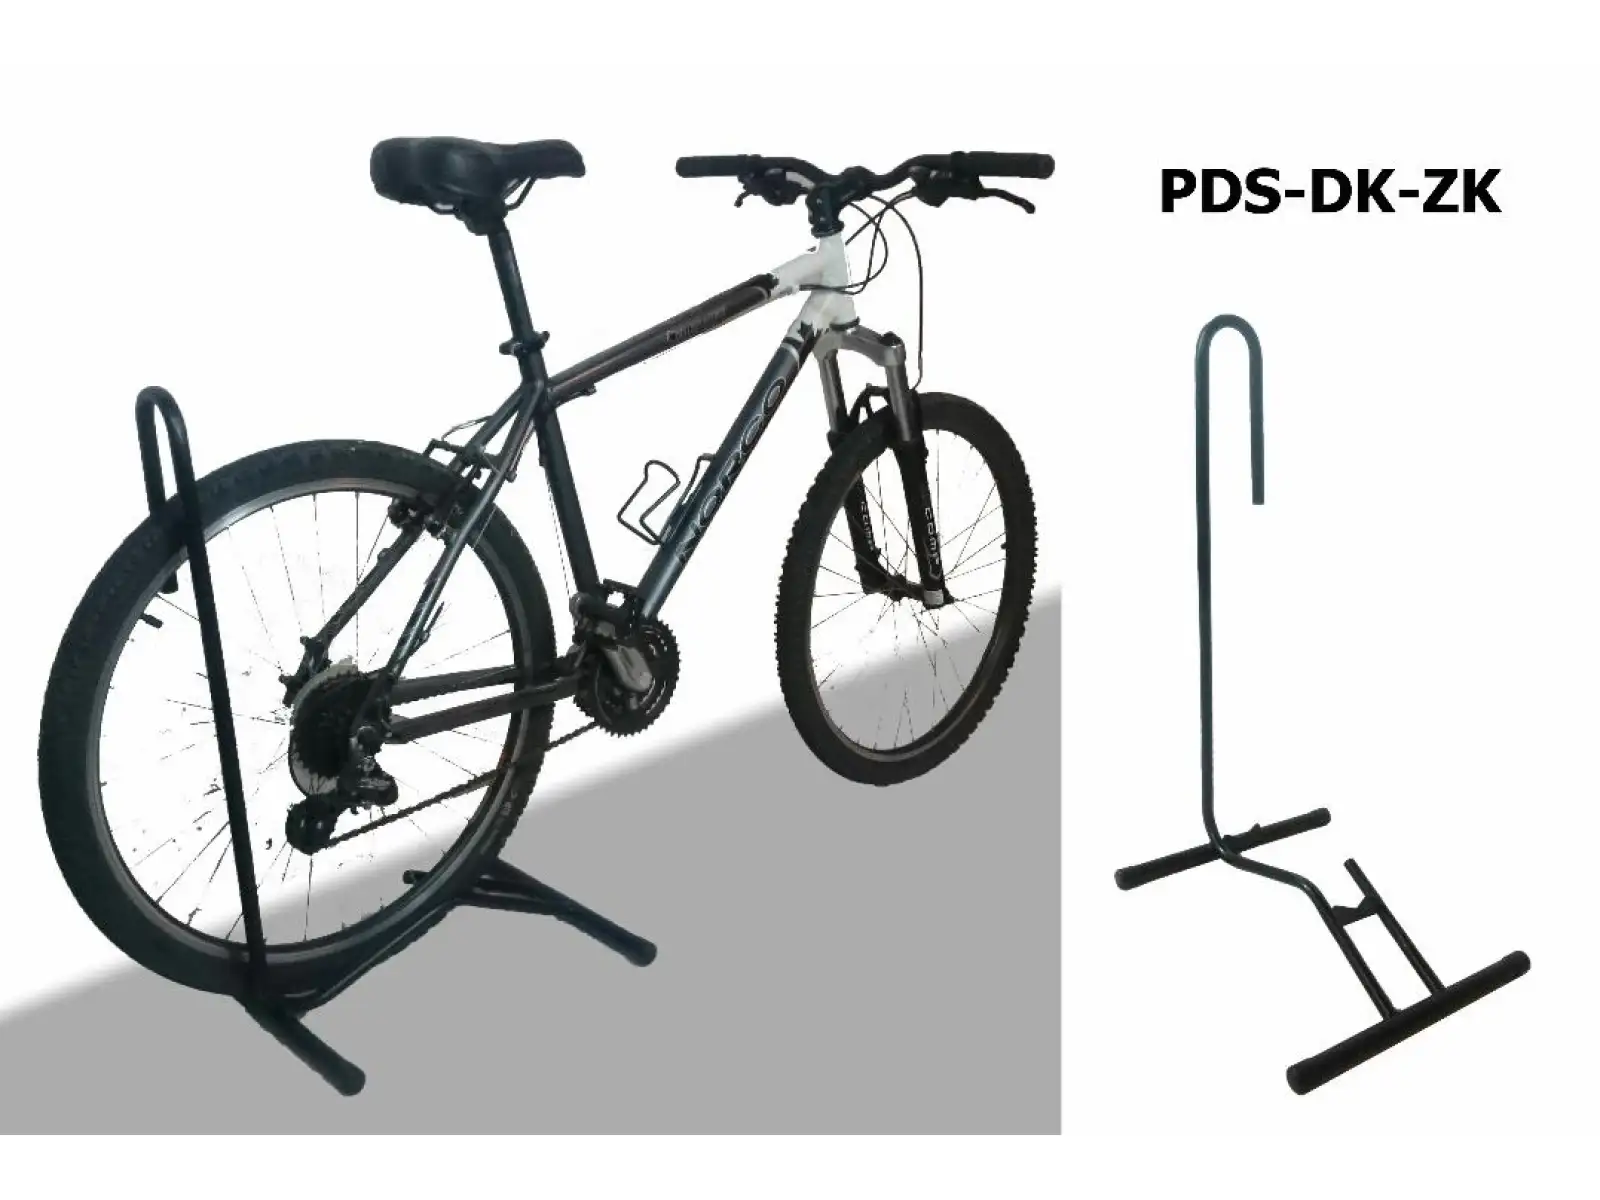 Držiak na bicykel - pre zadné koleso PDS-DK-ZK